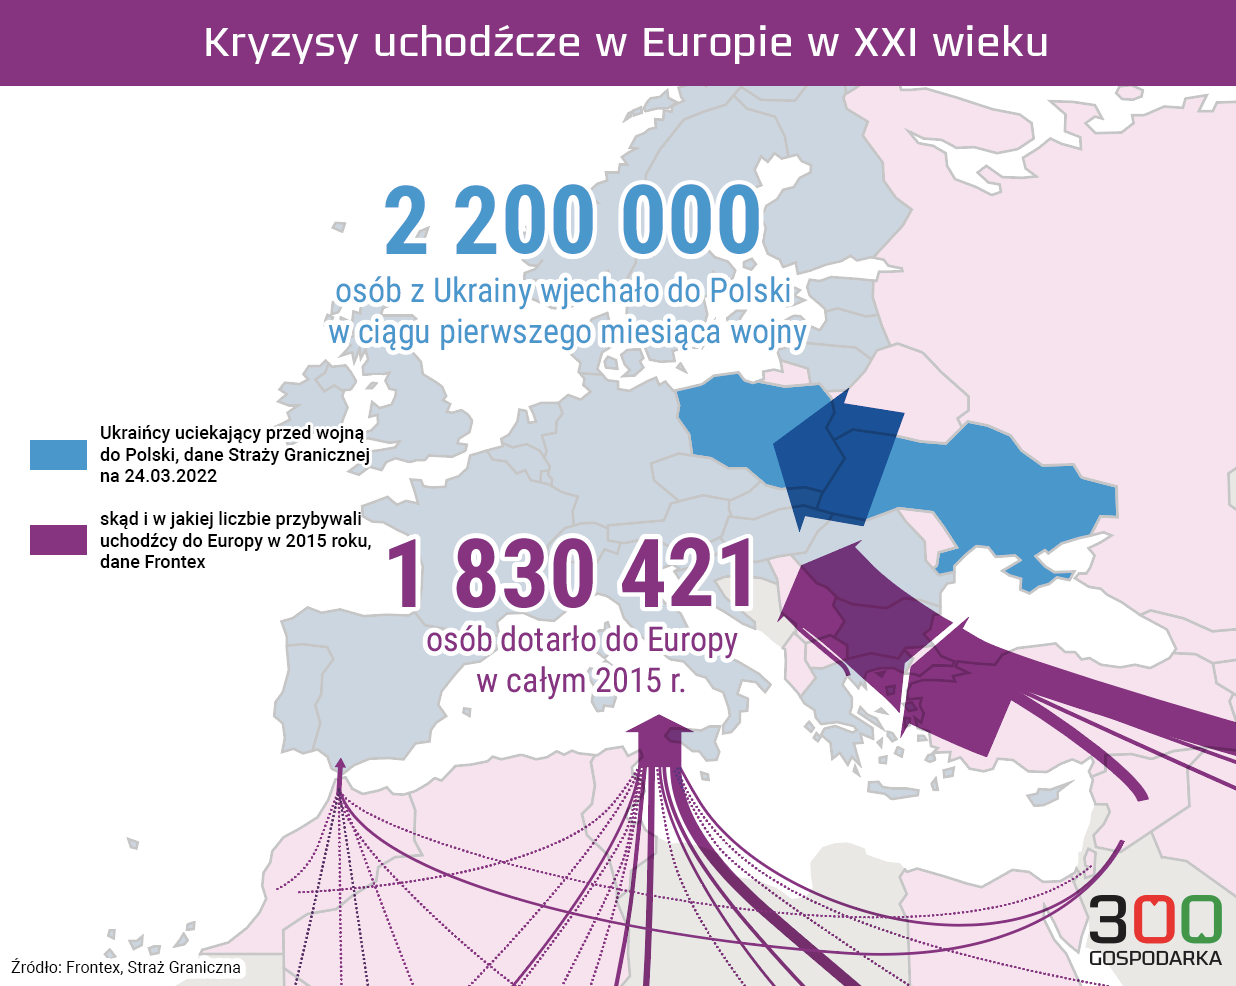 Ilu uchodźców przybyło do Europy i Polski - porównanie